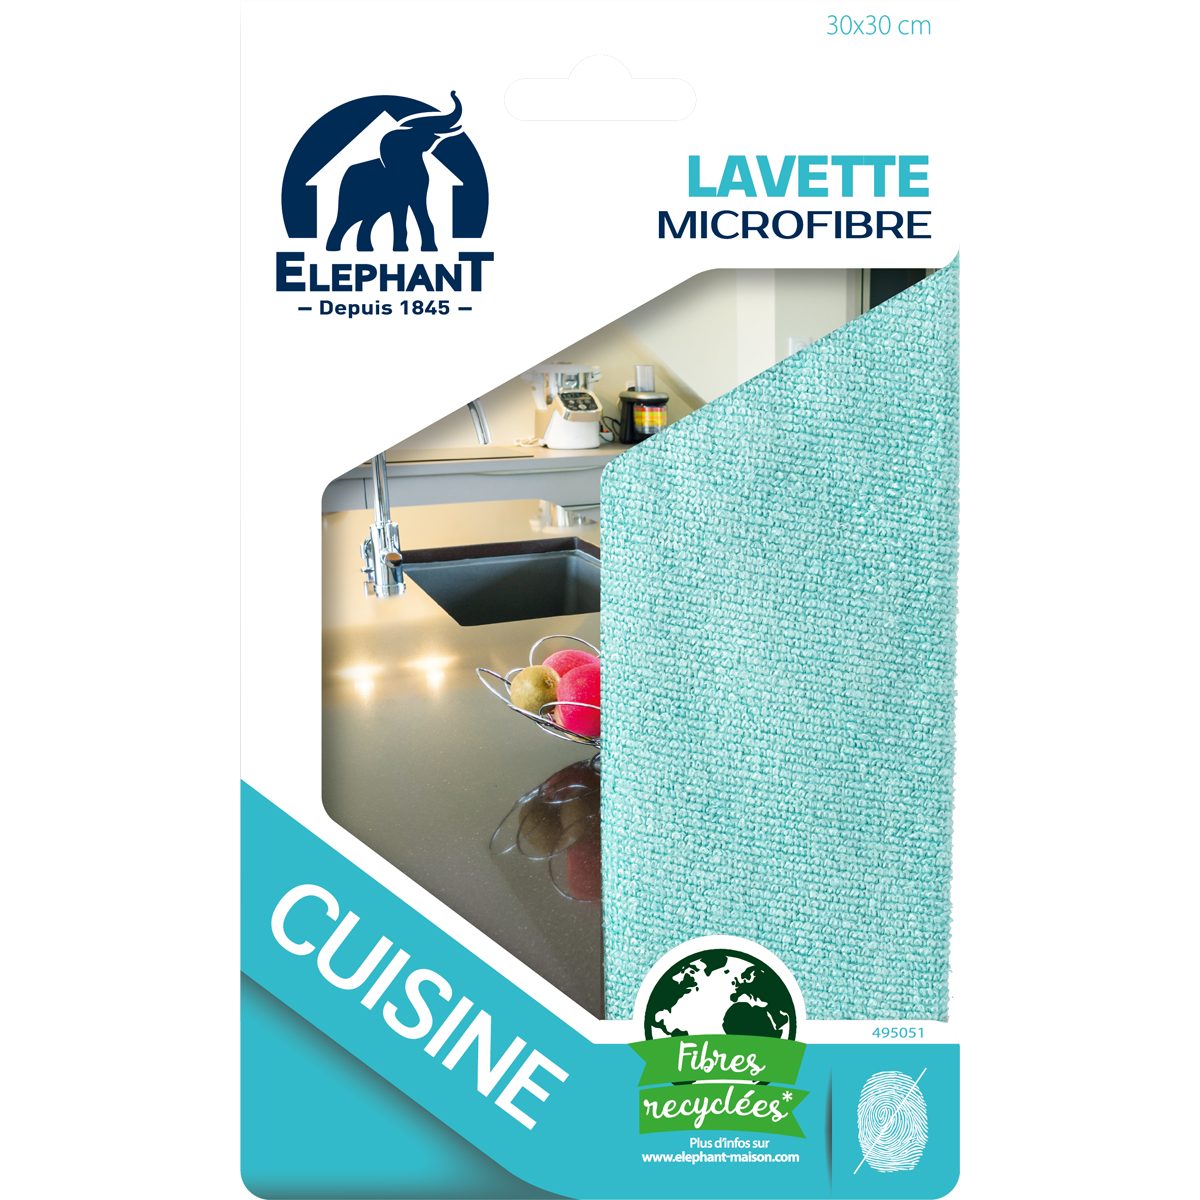 Lavette microfibre Bleu - Elephant Maison